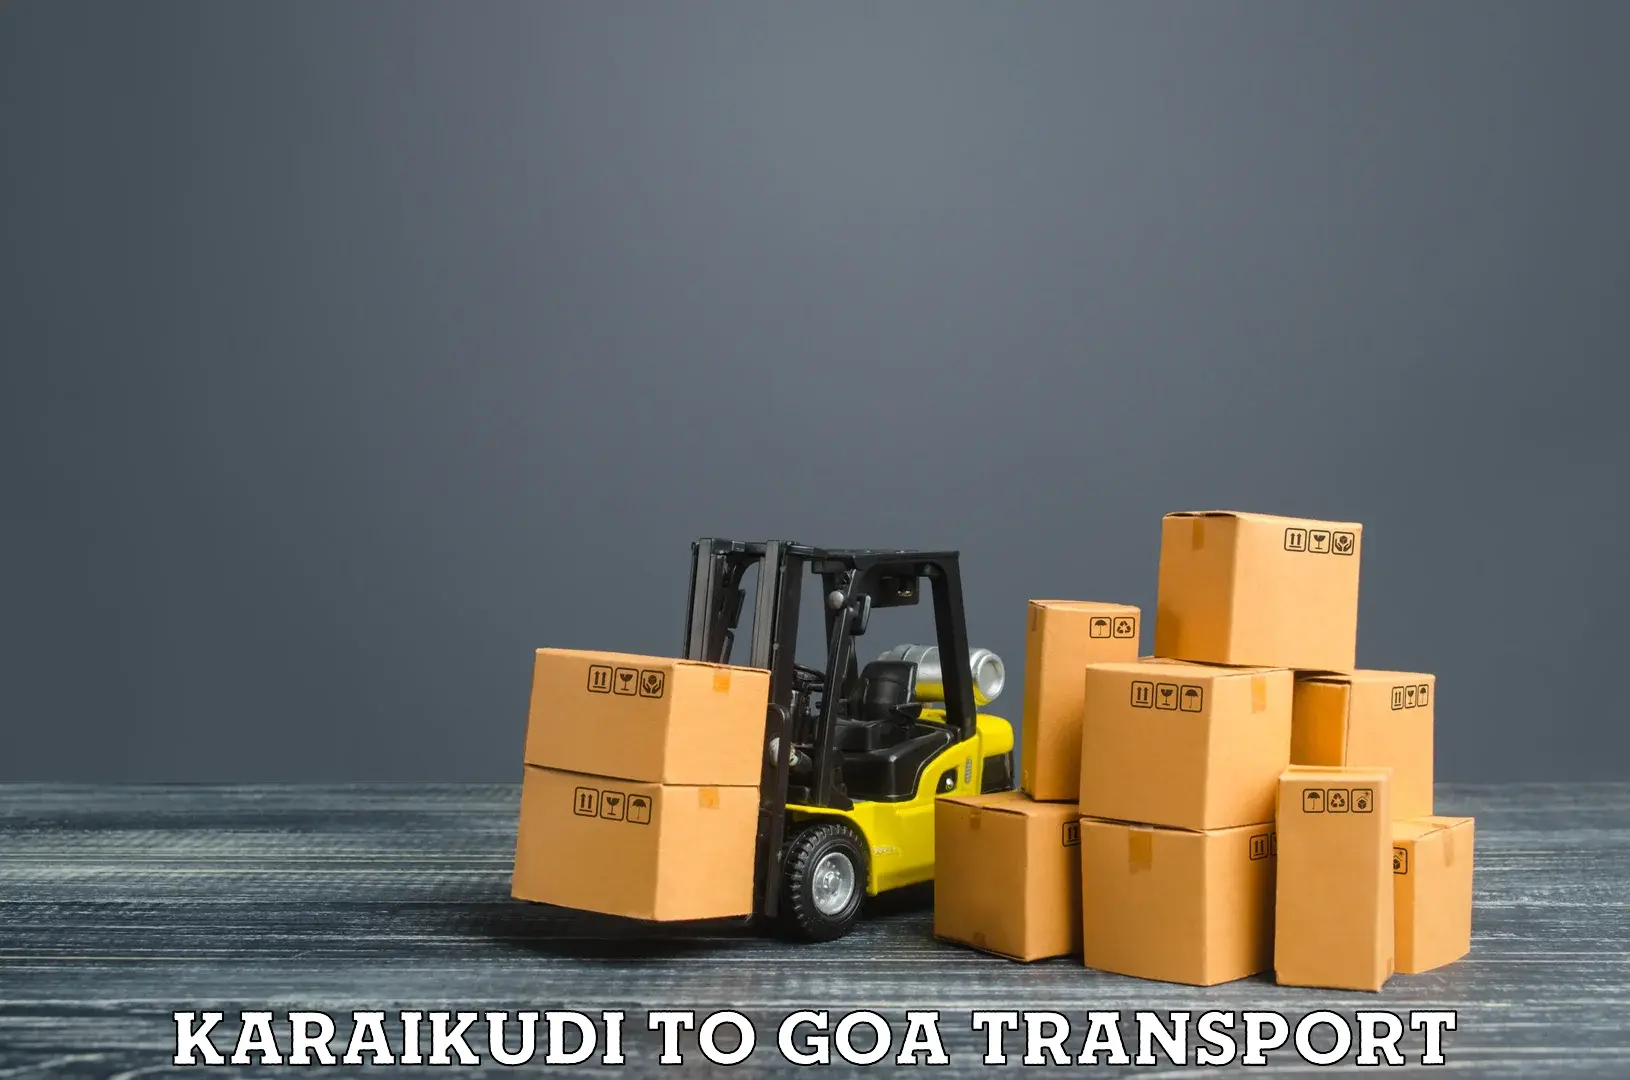 Shipping partner Karaikudi to NIT Goa